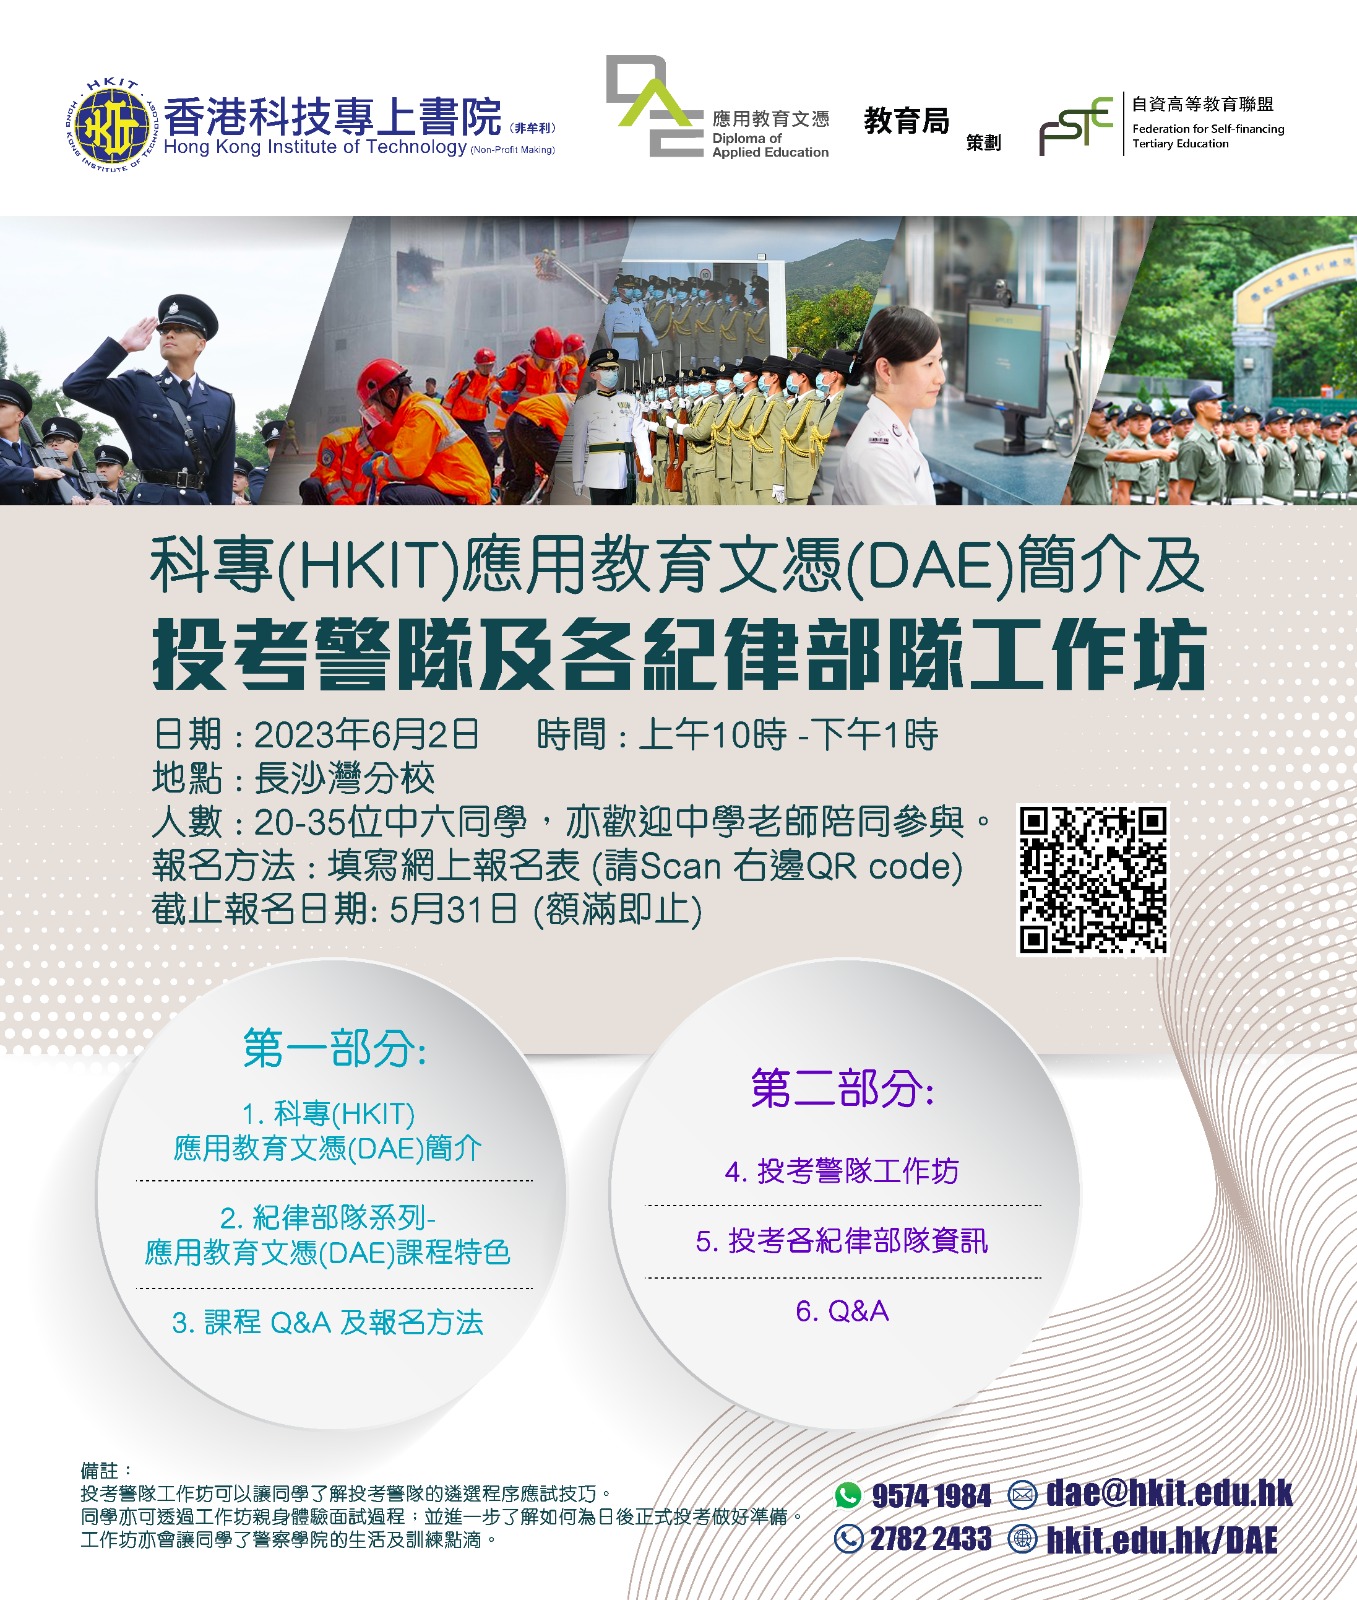 科專(HKIT)應用教育文憑(DAE)簡介及投考警隊及各紀律部隊工作坊